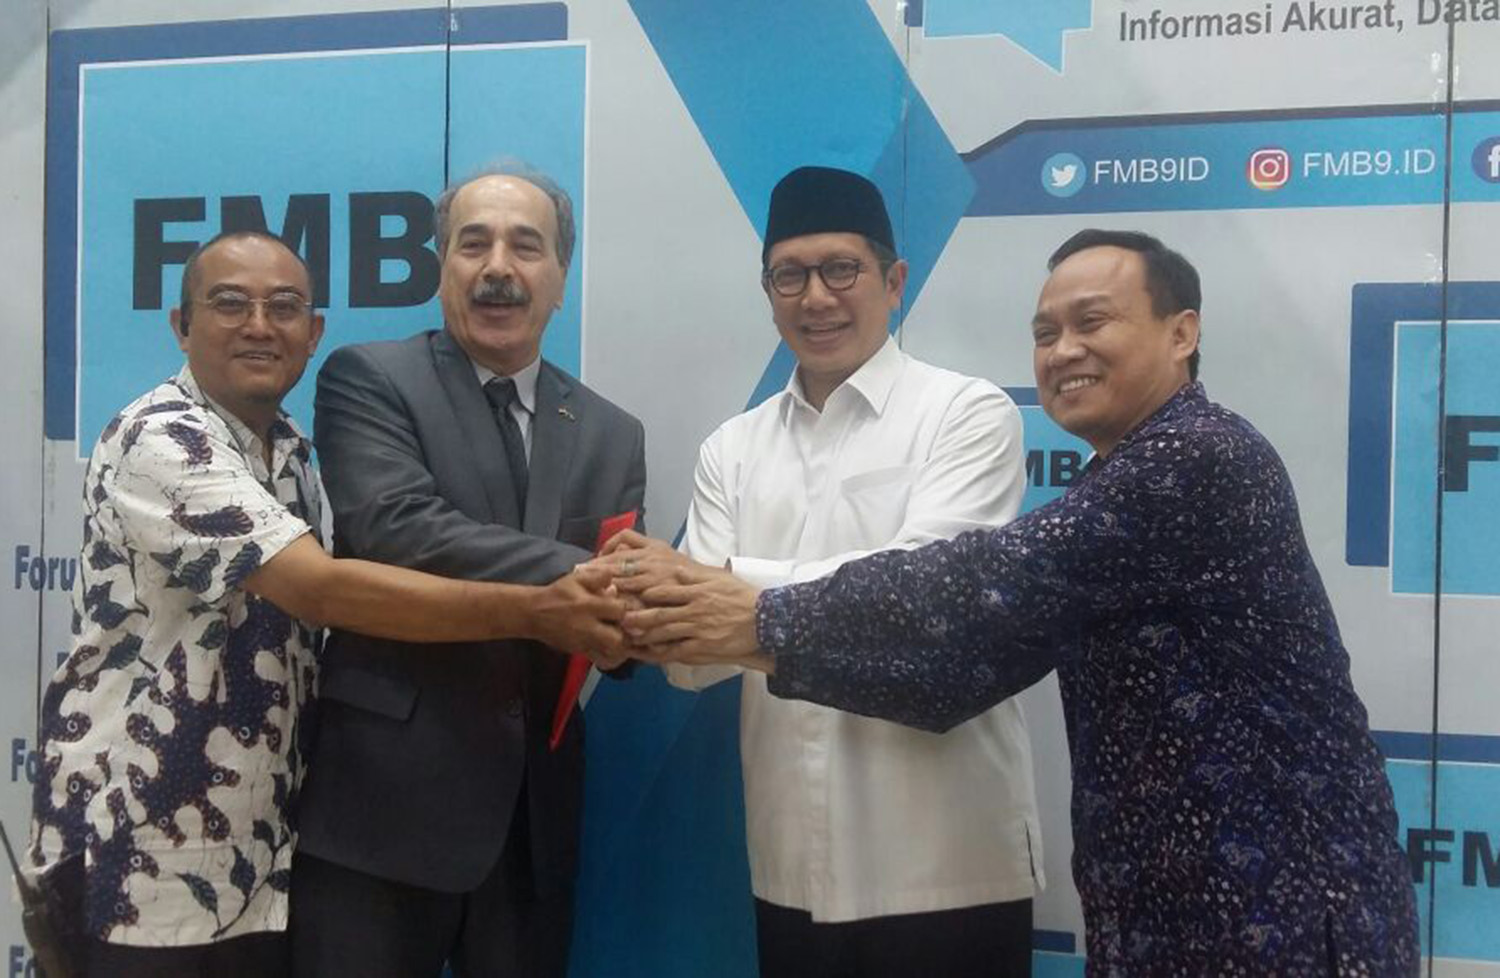 Menteri Agama Sebut Tidak Ada Perda Syariah di Indonesia